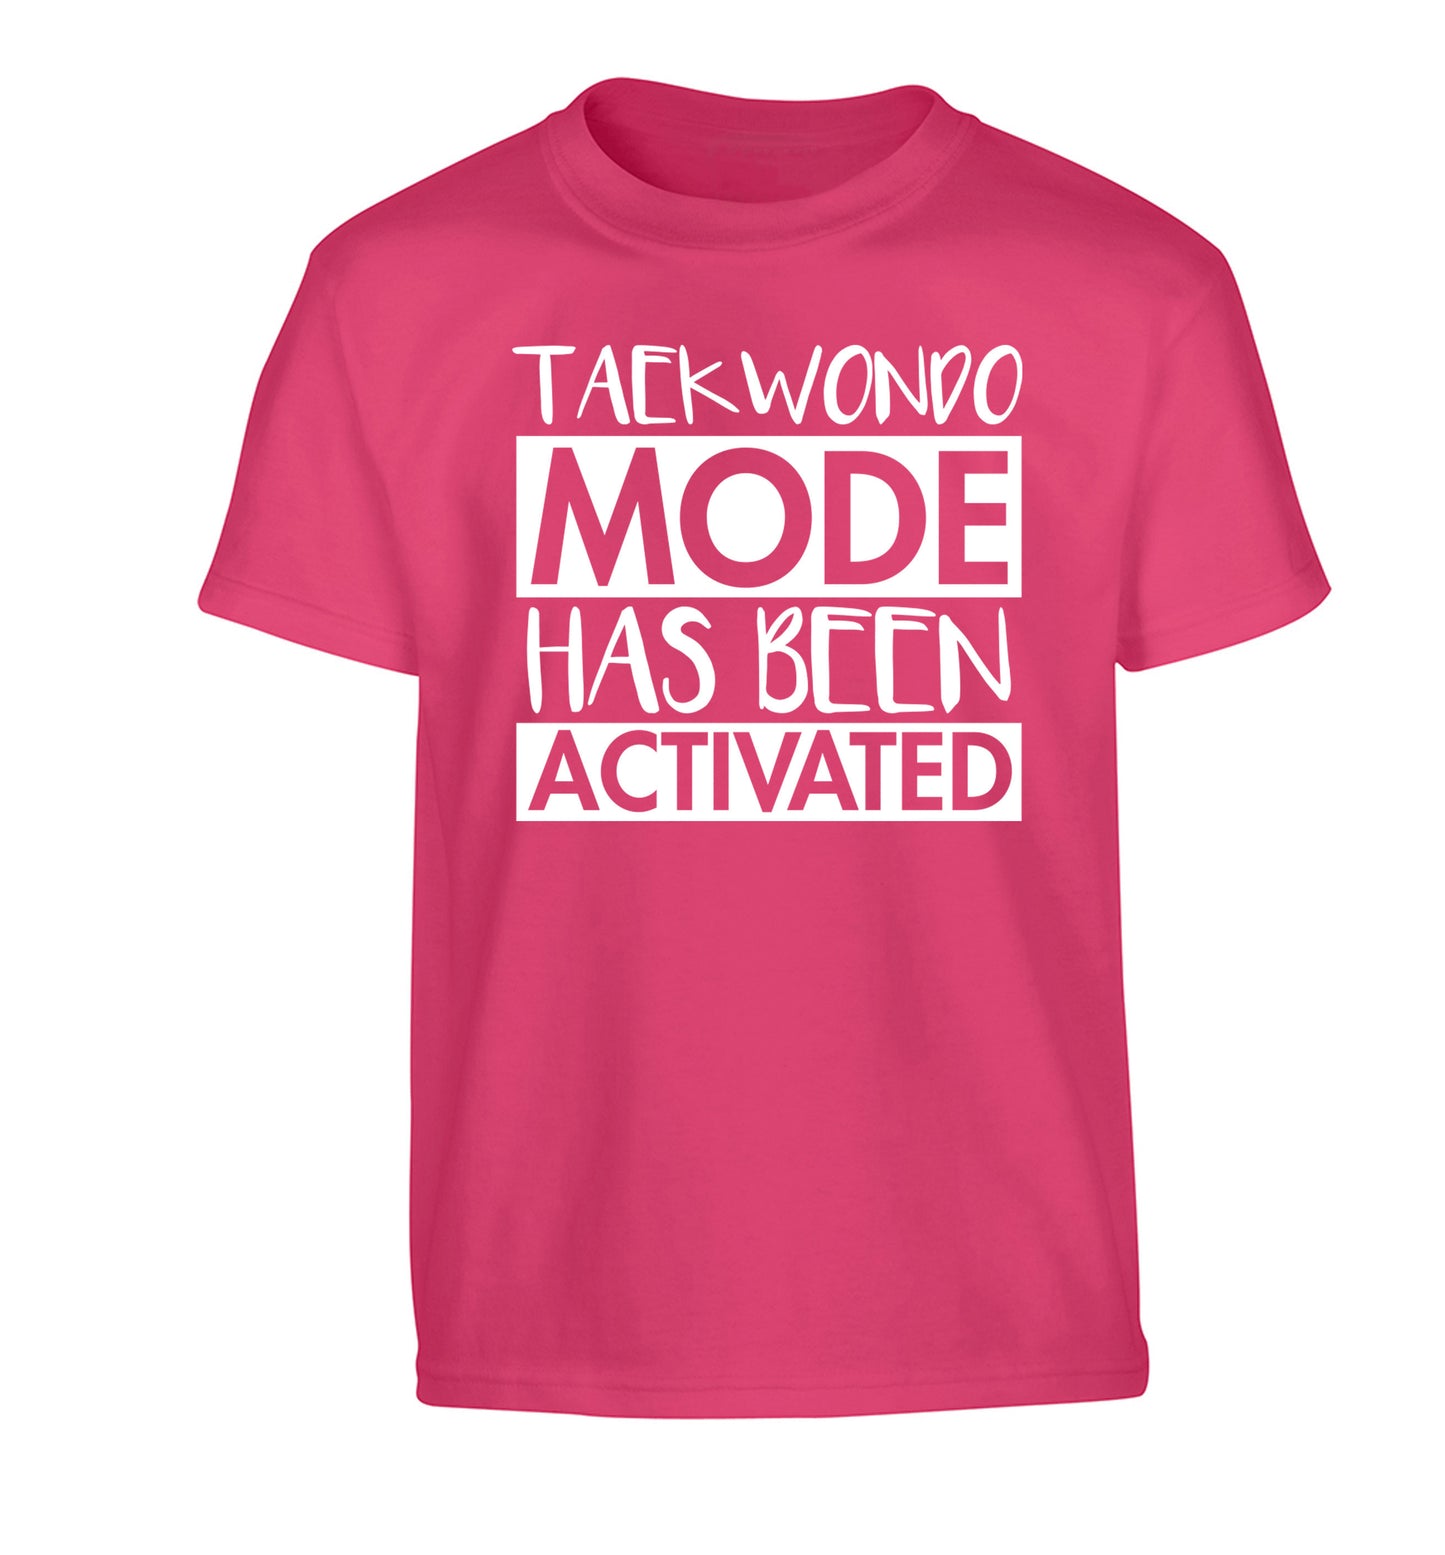 Taekwondo mode activated Children's pink Tshirt 12-14 Years